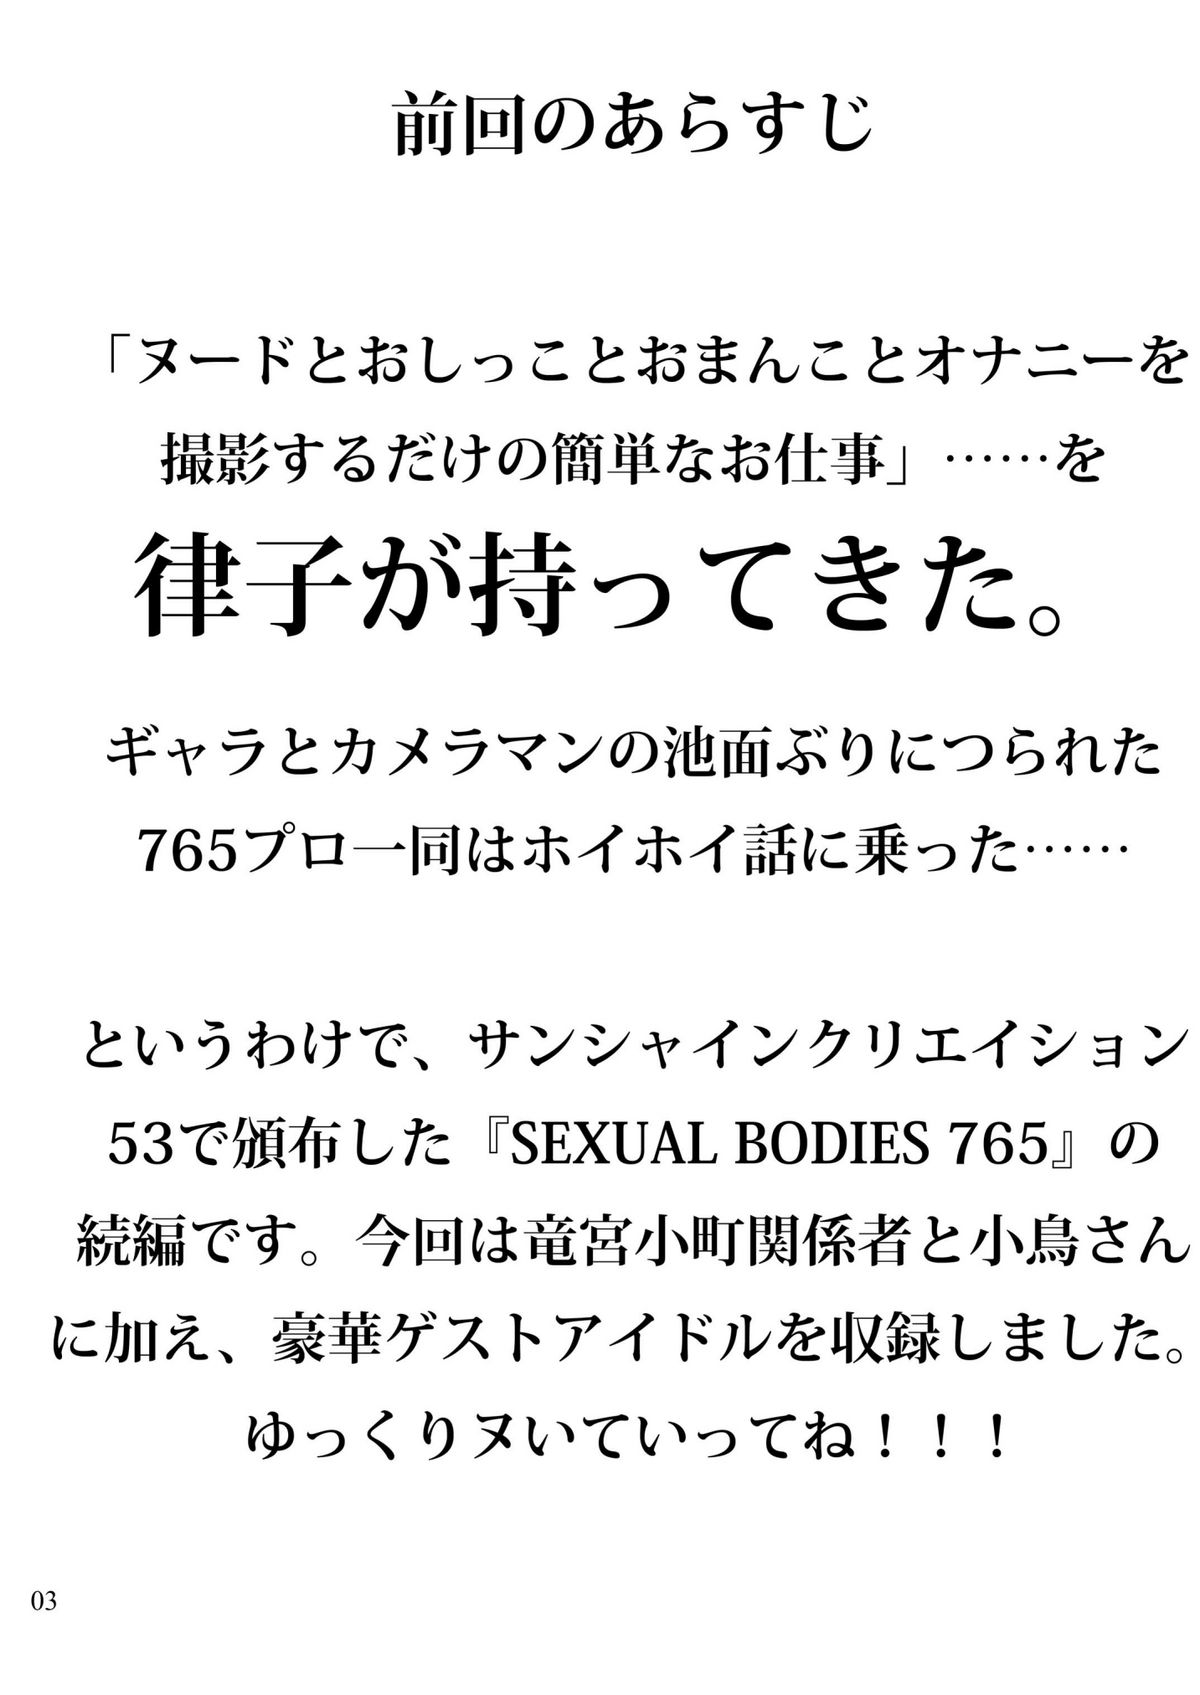 (COMIC1☆6) [LUNATIC PROPHET (有村悠)] SEXUAL BODIES 765 Part2 [DL版]